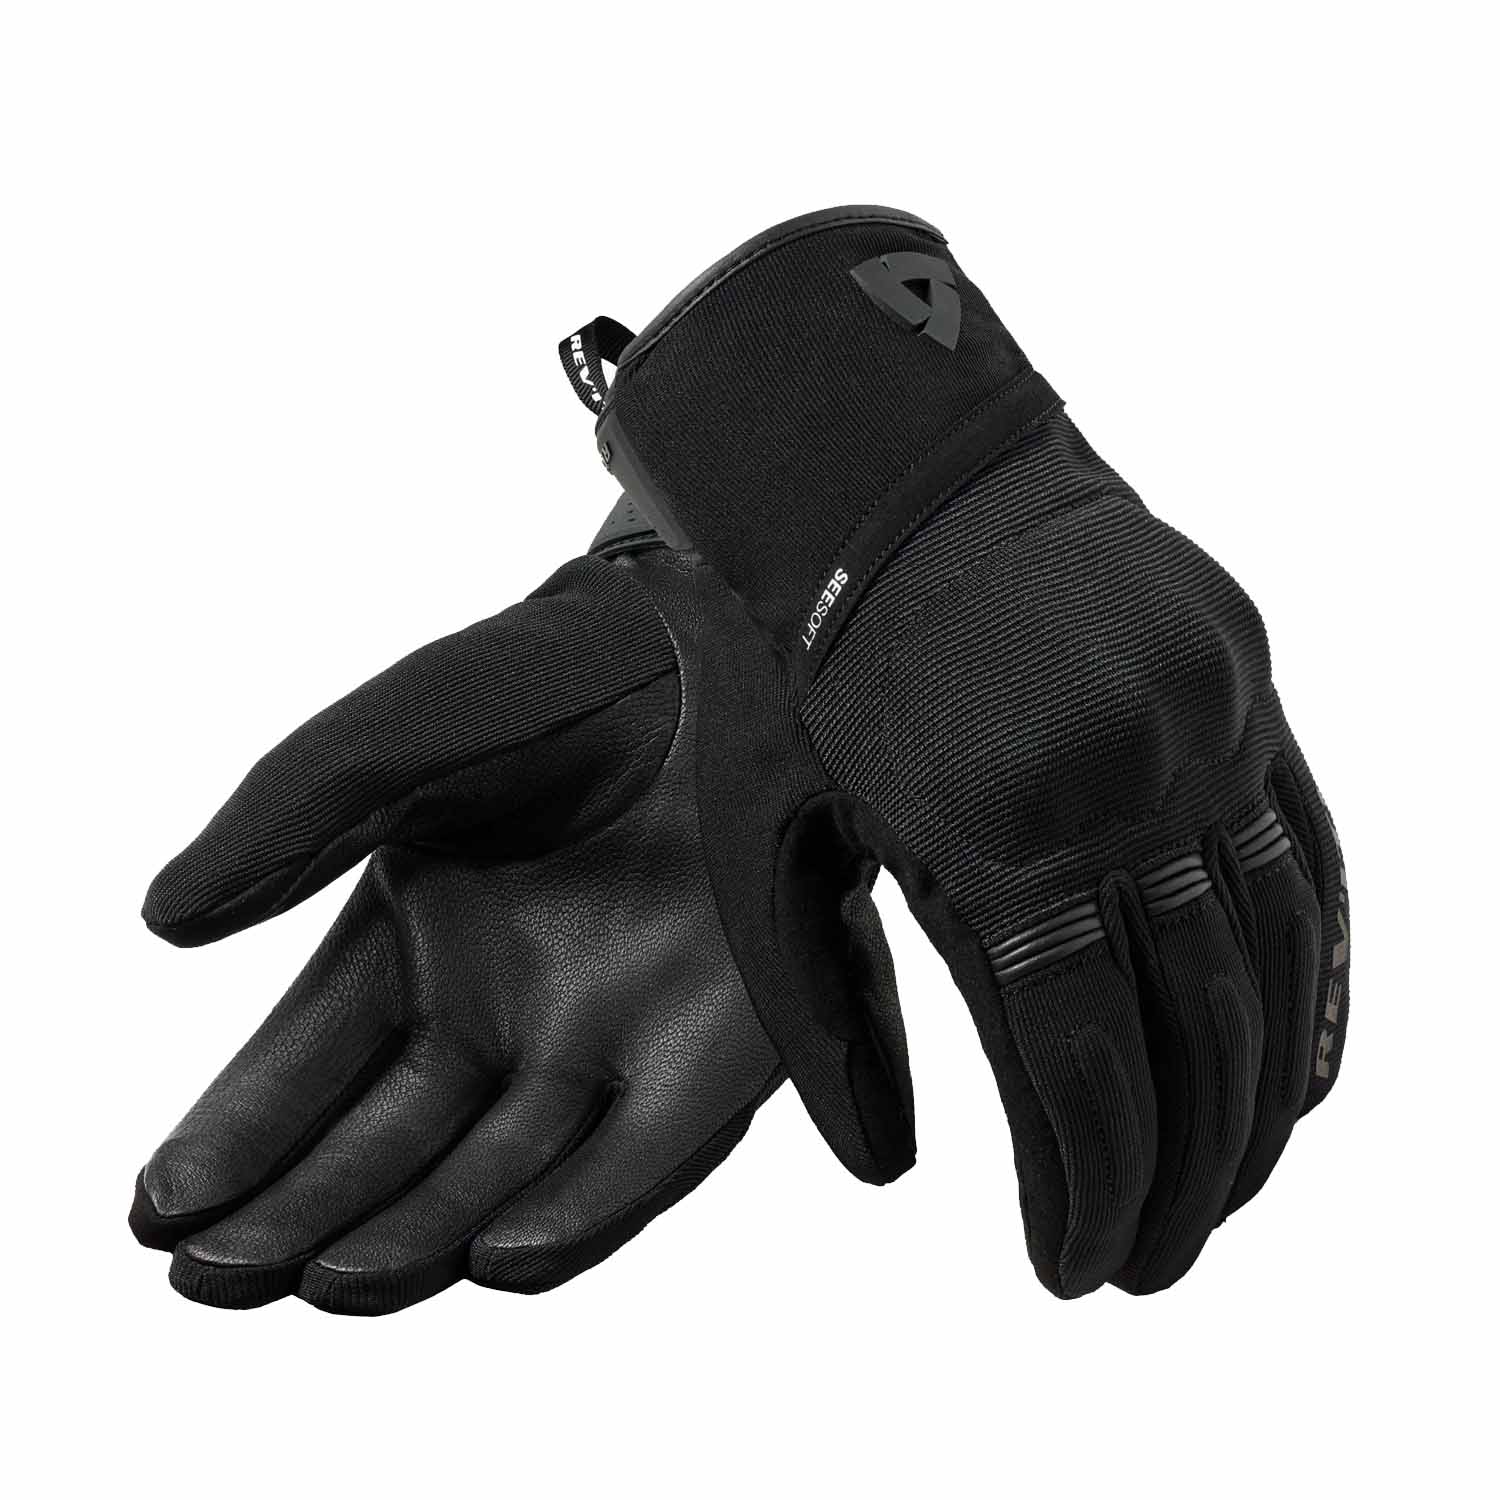 Image of REV'IT! Mosca 2 H2O Gloves Black Size 3XL EN